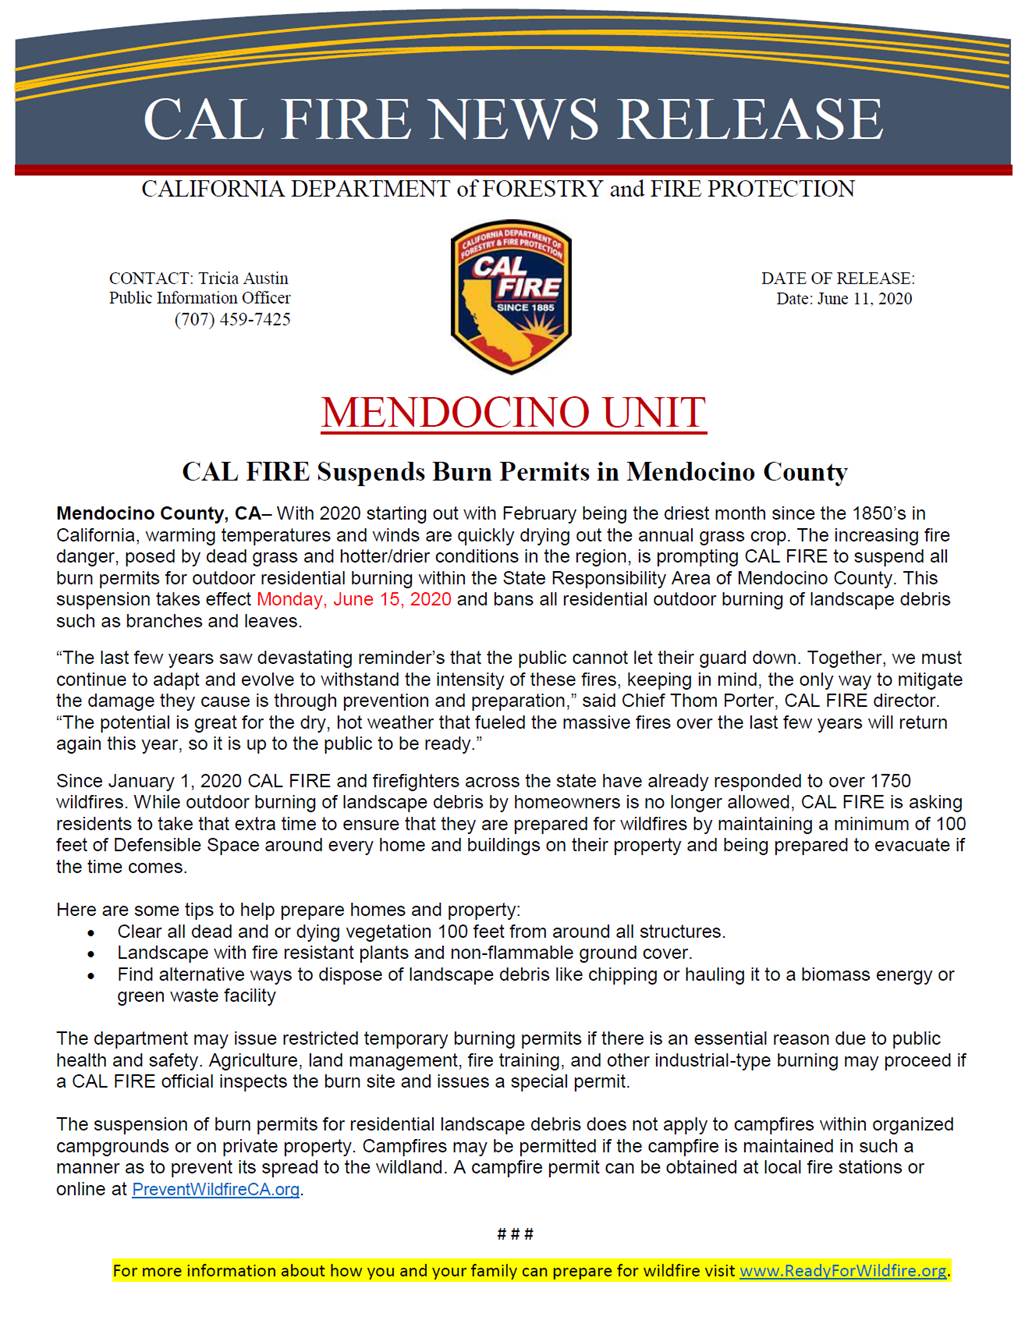 Cal Fire will suspend burn permits June 15 • The Mendocino Voice